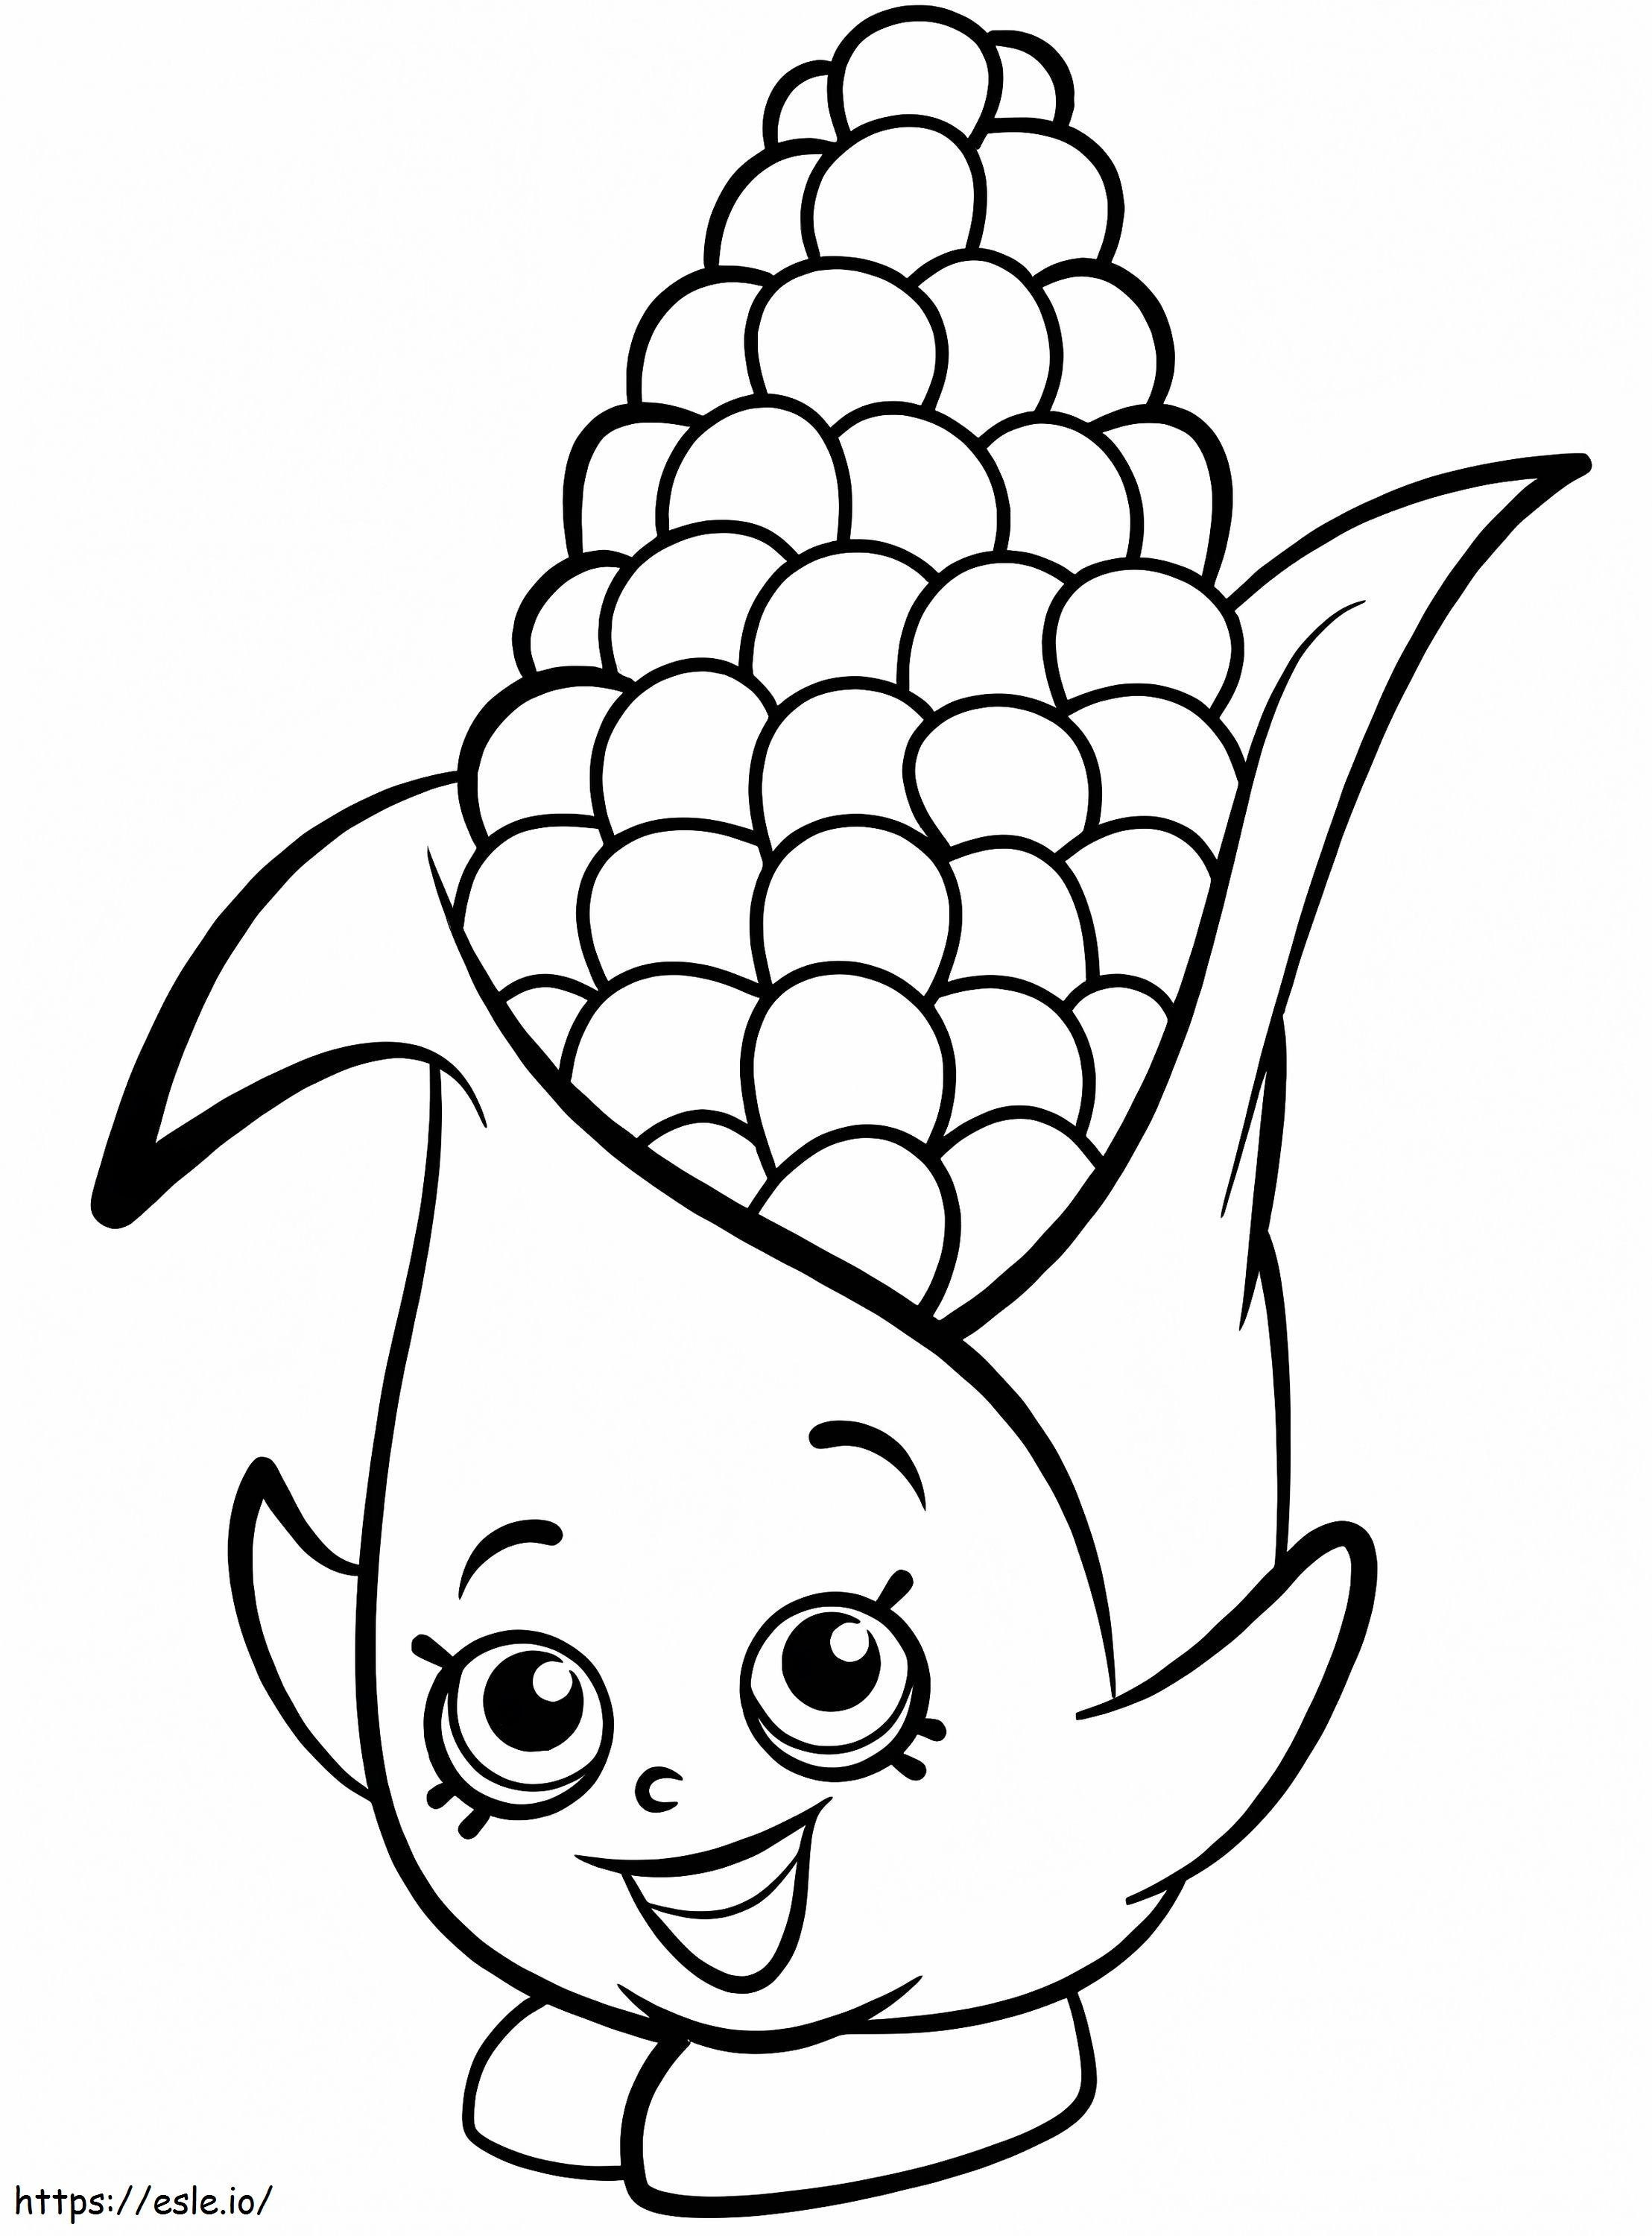 Fun Corn Cartoon coloring page